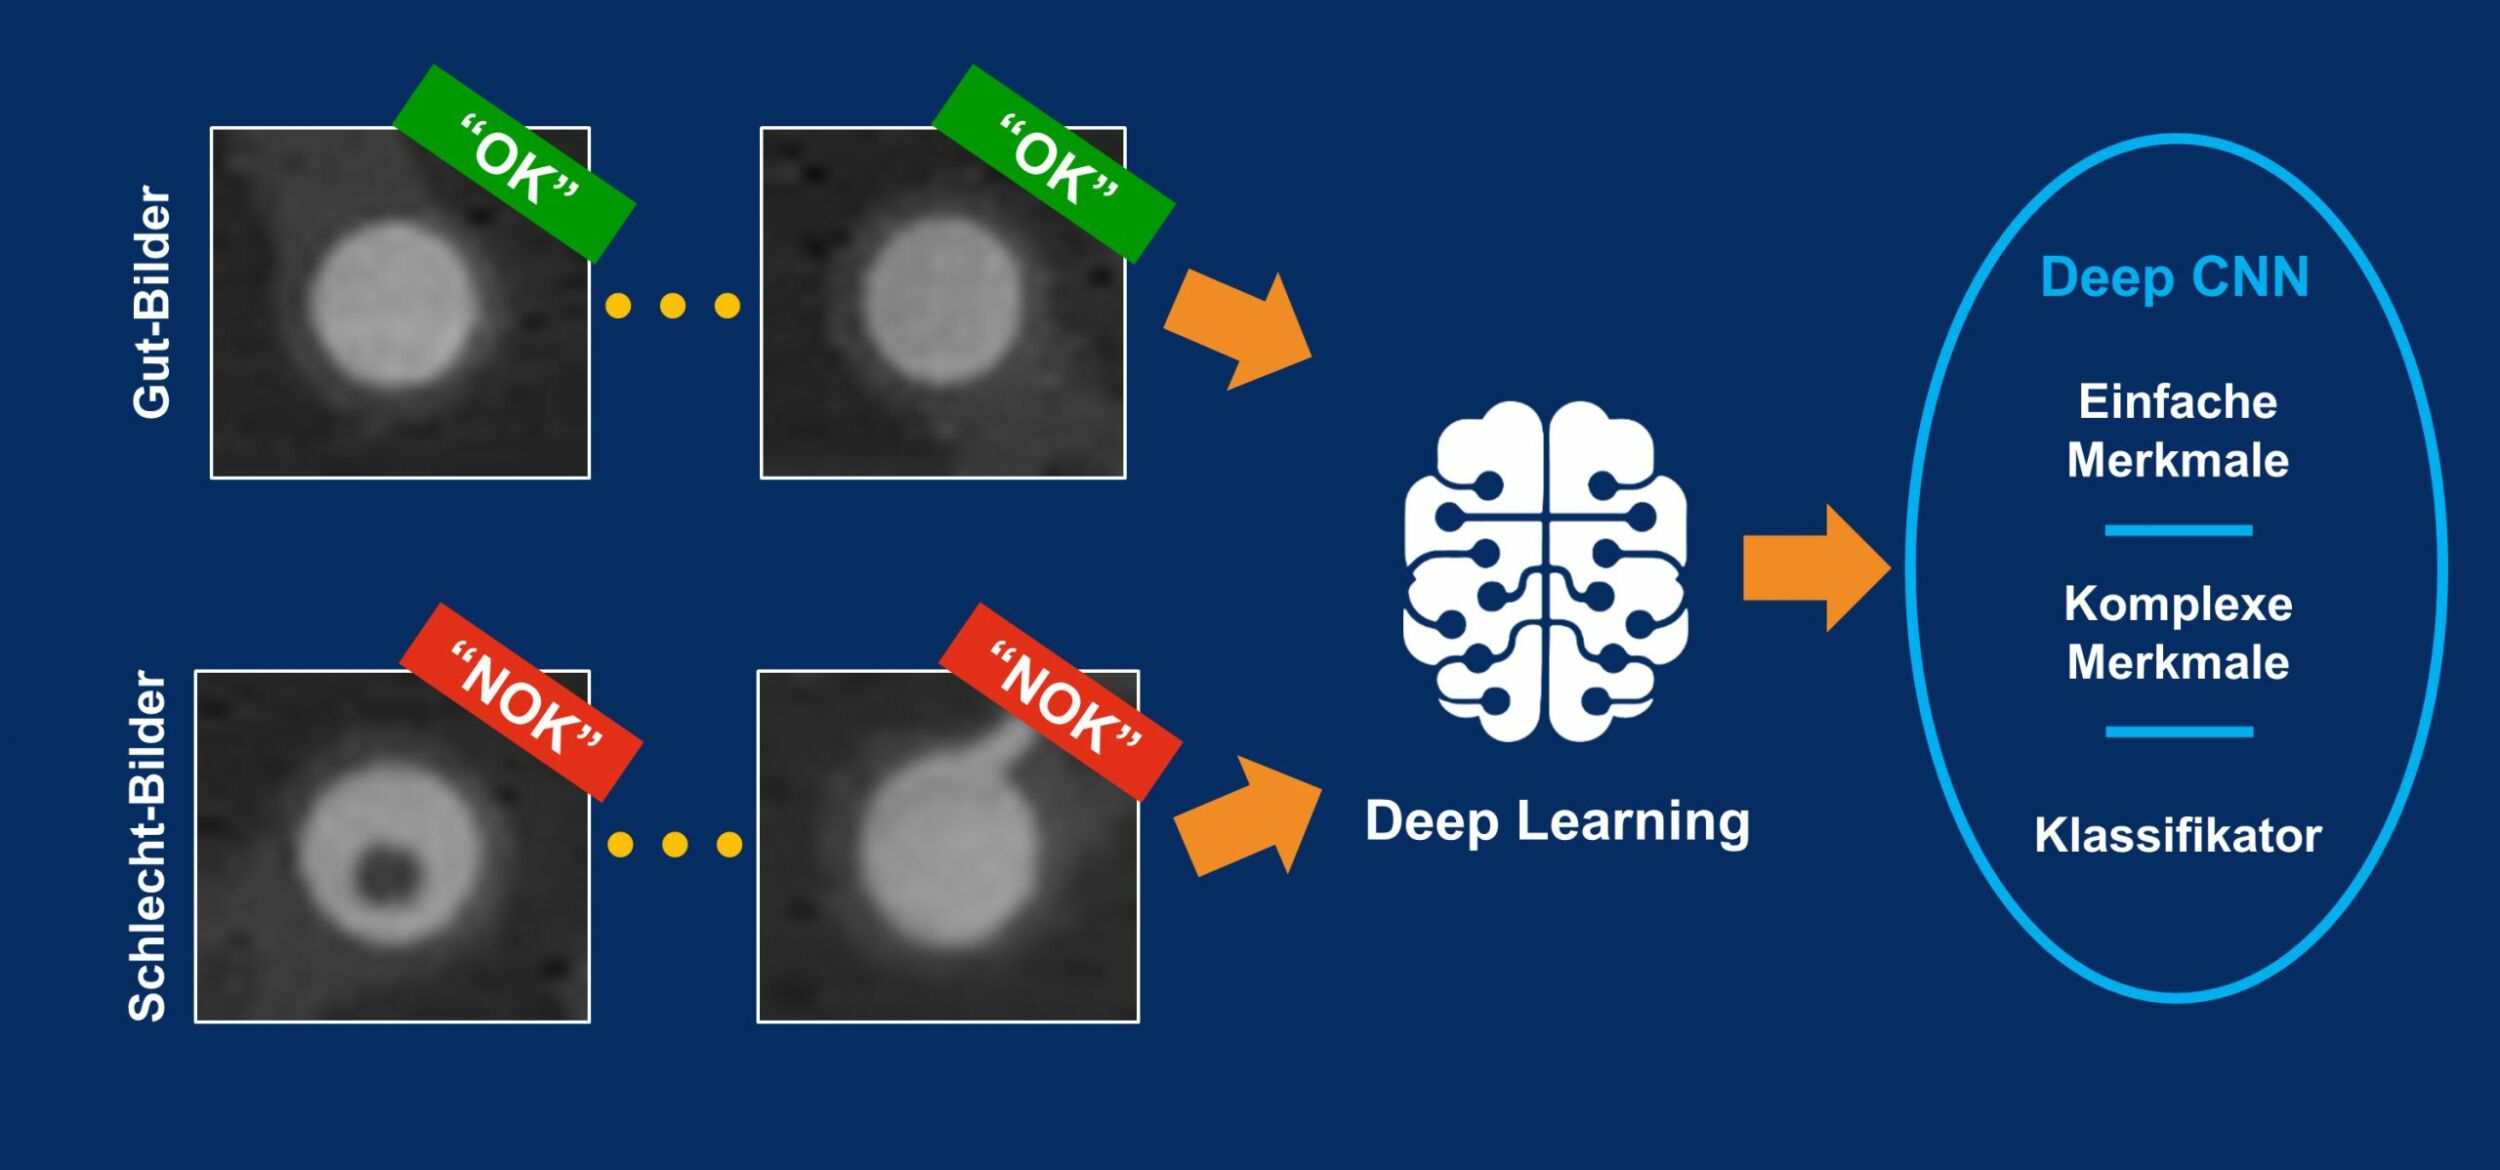 Deep-Learning-Algorithmen nutzen sowohl Schlecht-Bilder als auch Gut-Bilder zur Fehlererkennung. (Bild: MVTec Software GmbH)